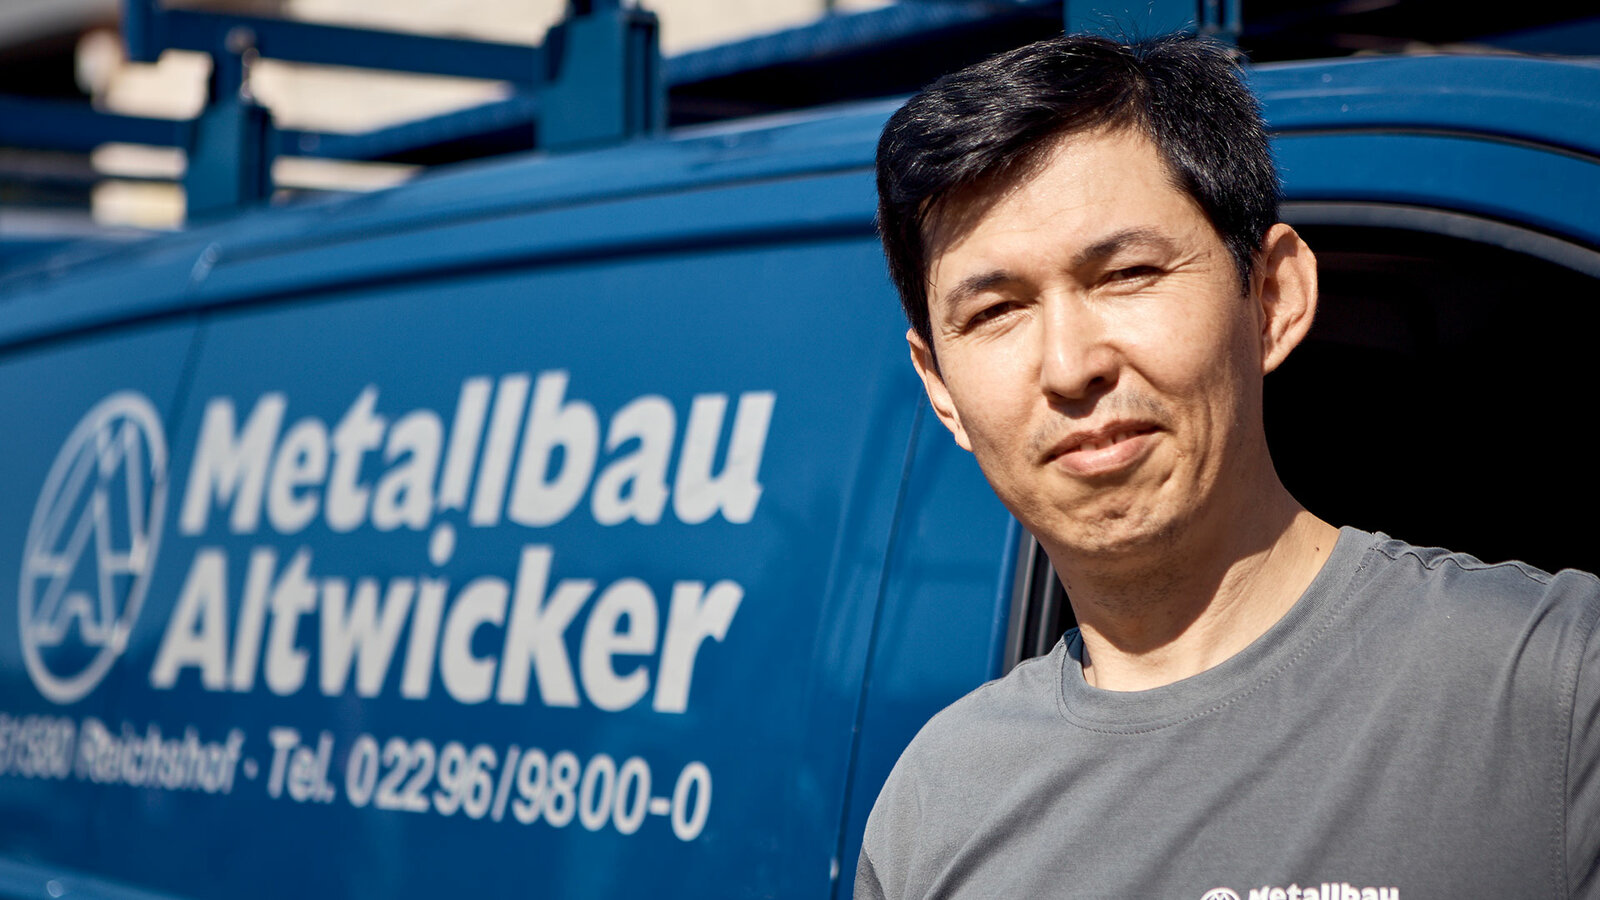 „Ich bin erst seit einigen Jahren in Deutschland und arbeite davon seit 4 Jahren bei Metallbau Altwicker. Das Team und der Chef haben mich super integriert. Die Arbeit ist wirklich gut."